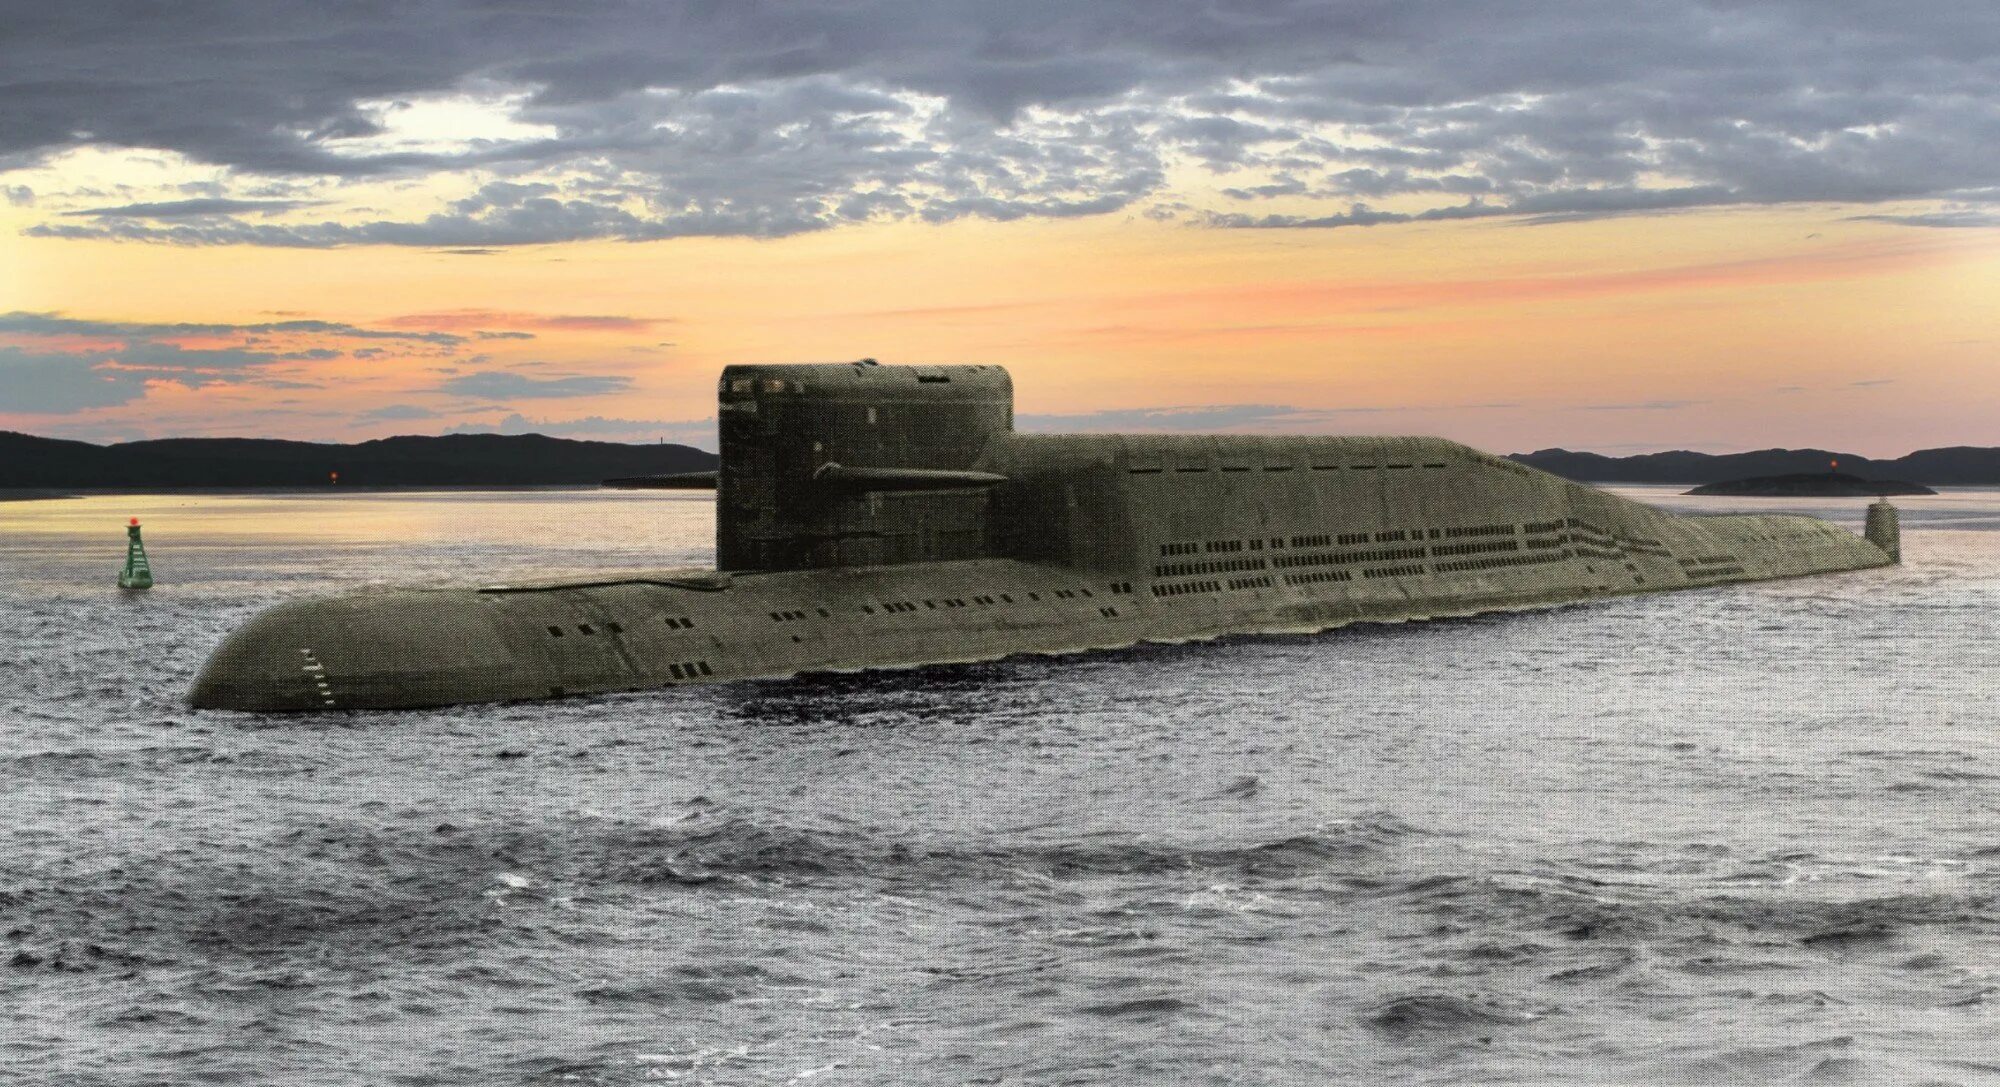 Кл пл. Подводная лодка 667бд. Подводные лодки проекта 667бдр «кальмар». Подводная лодка БДР 667.